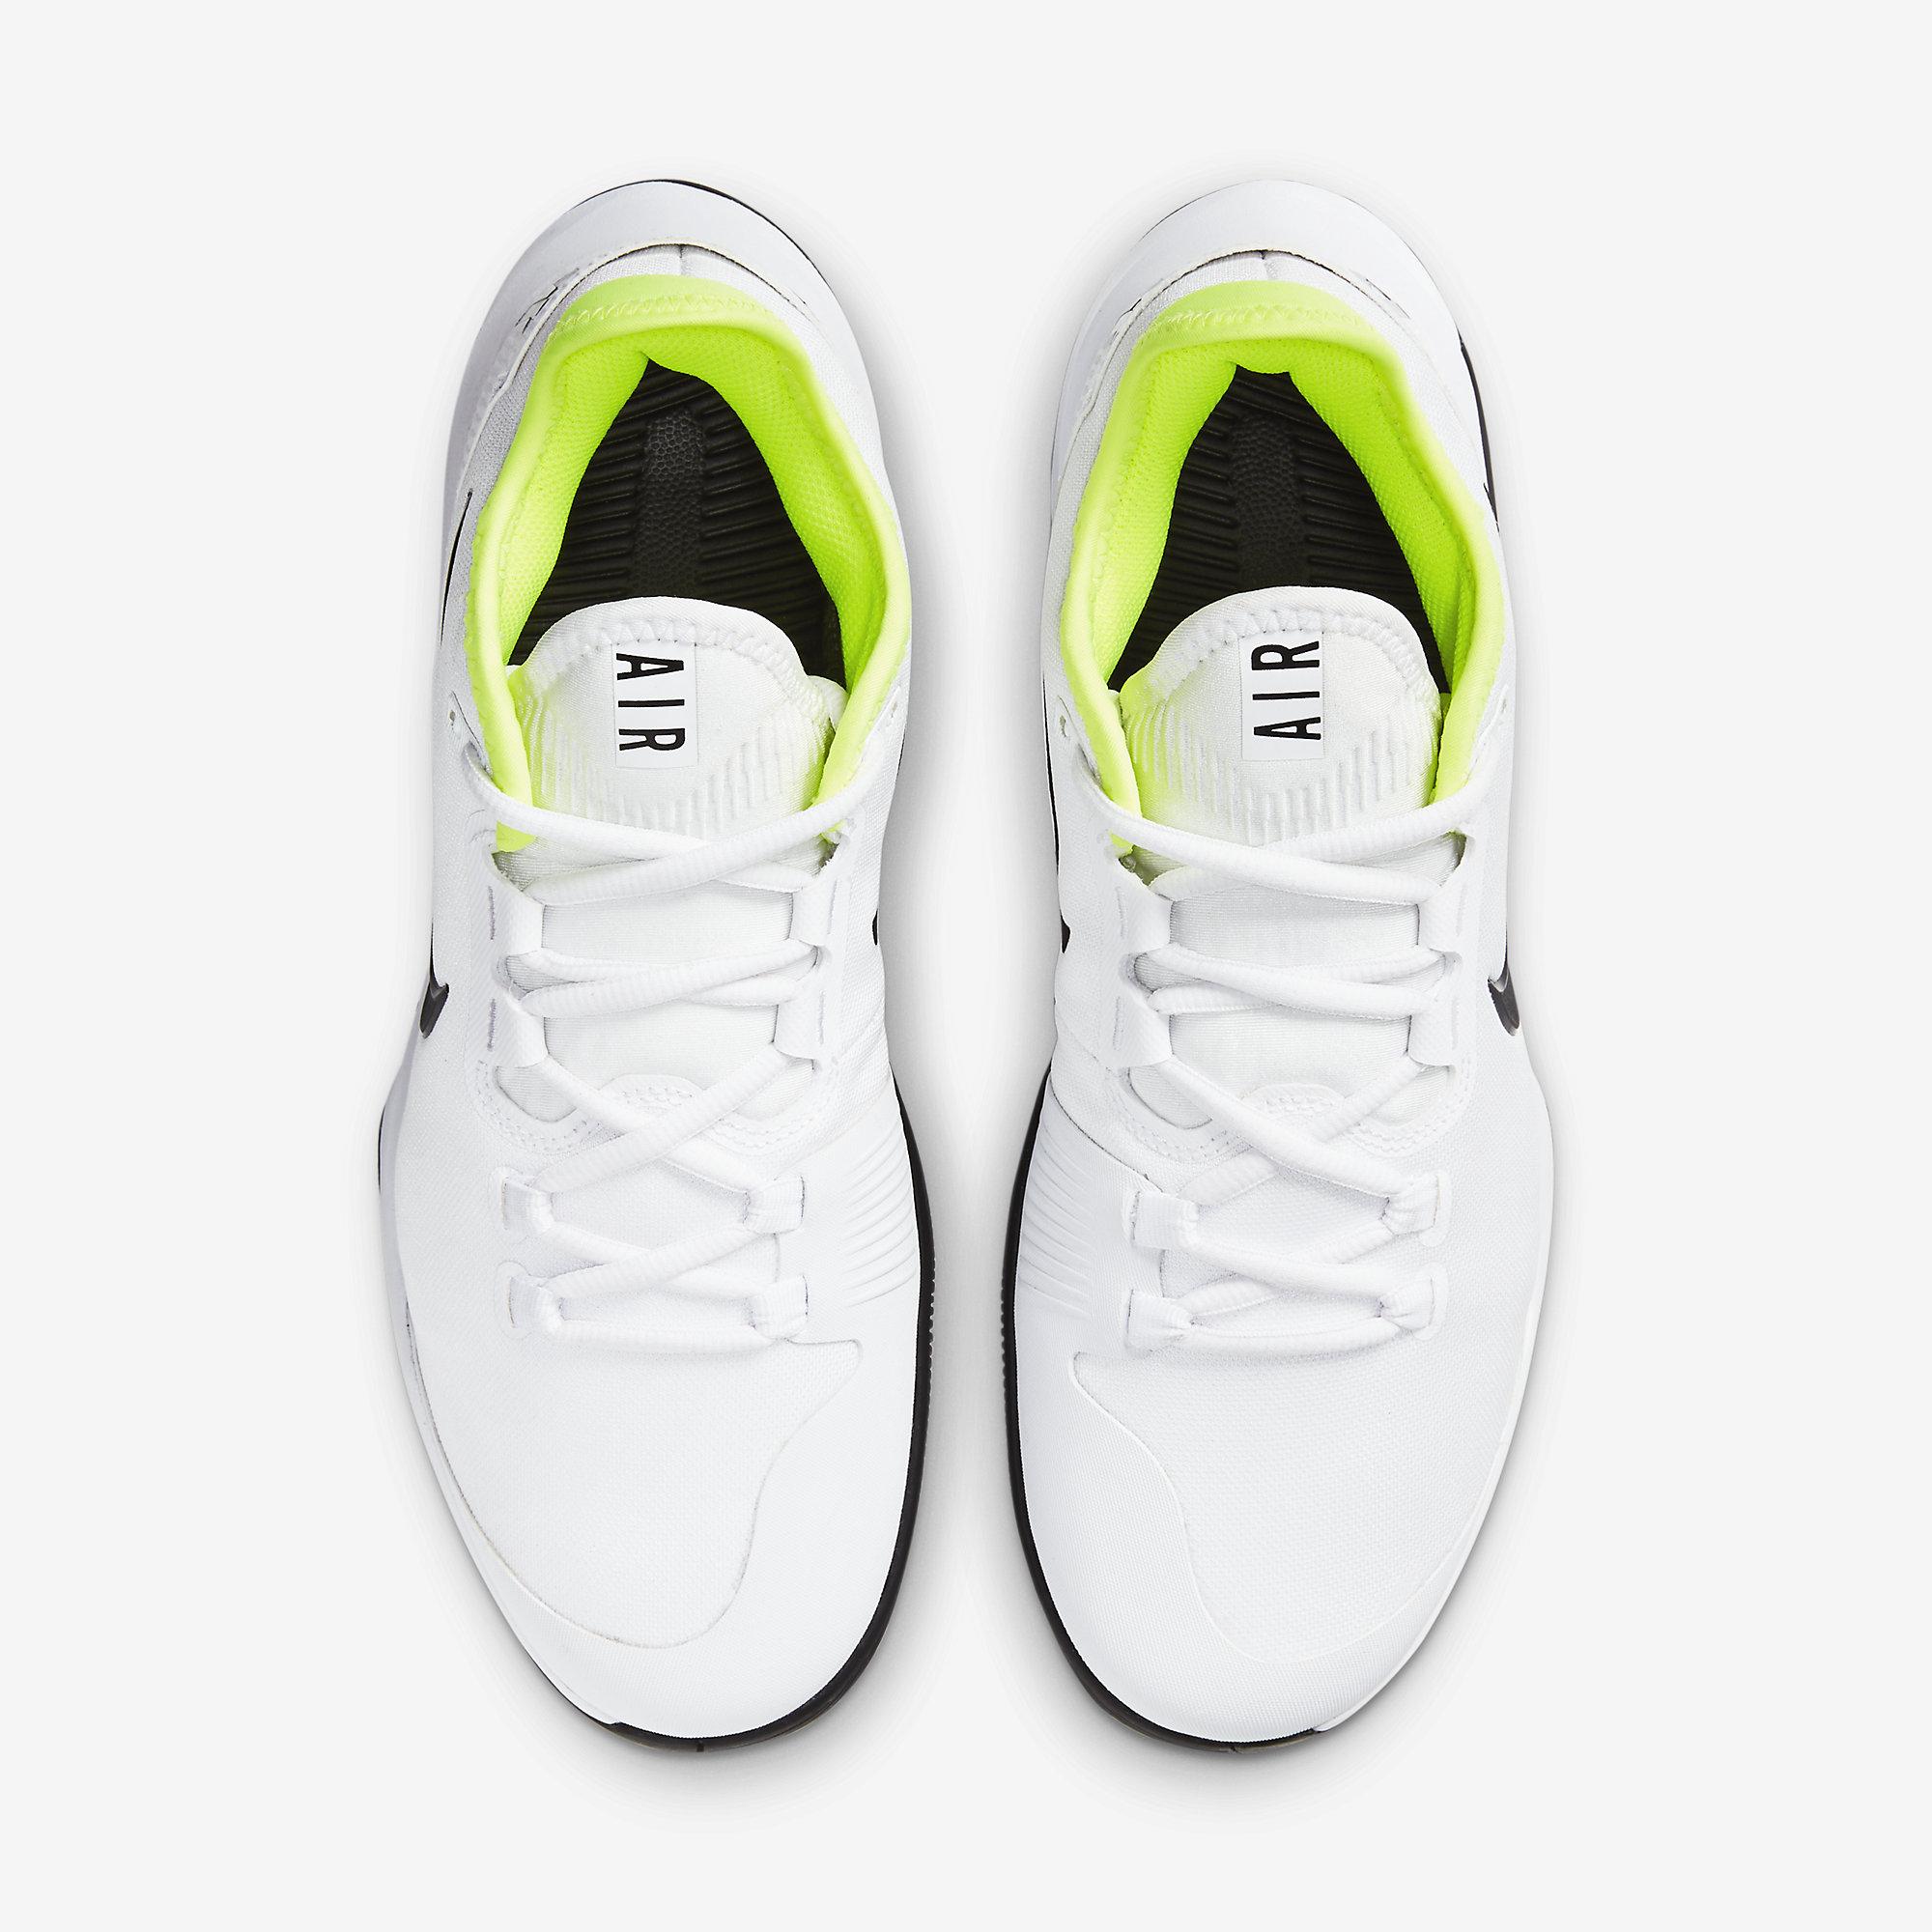 Nike Mens Air Max Wildcard Tennis Shoes - White/Volt/Black - Tennisnuts.com